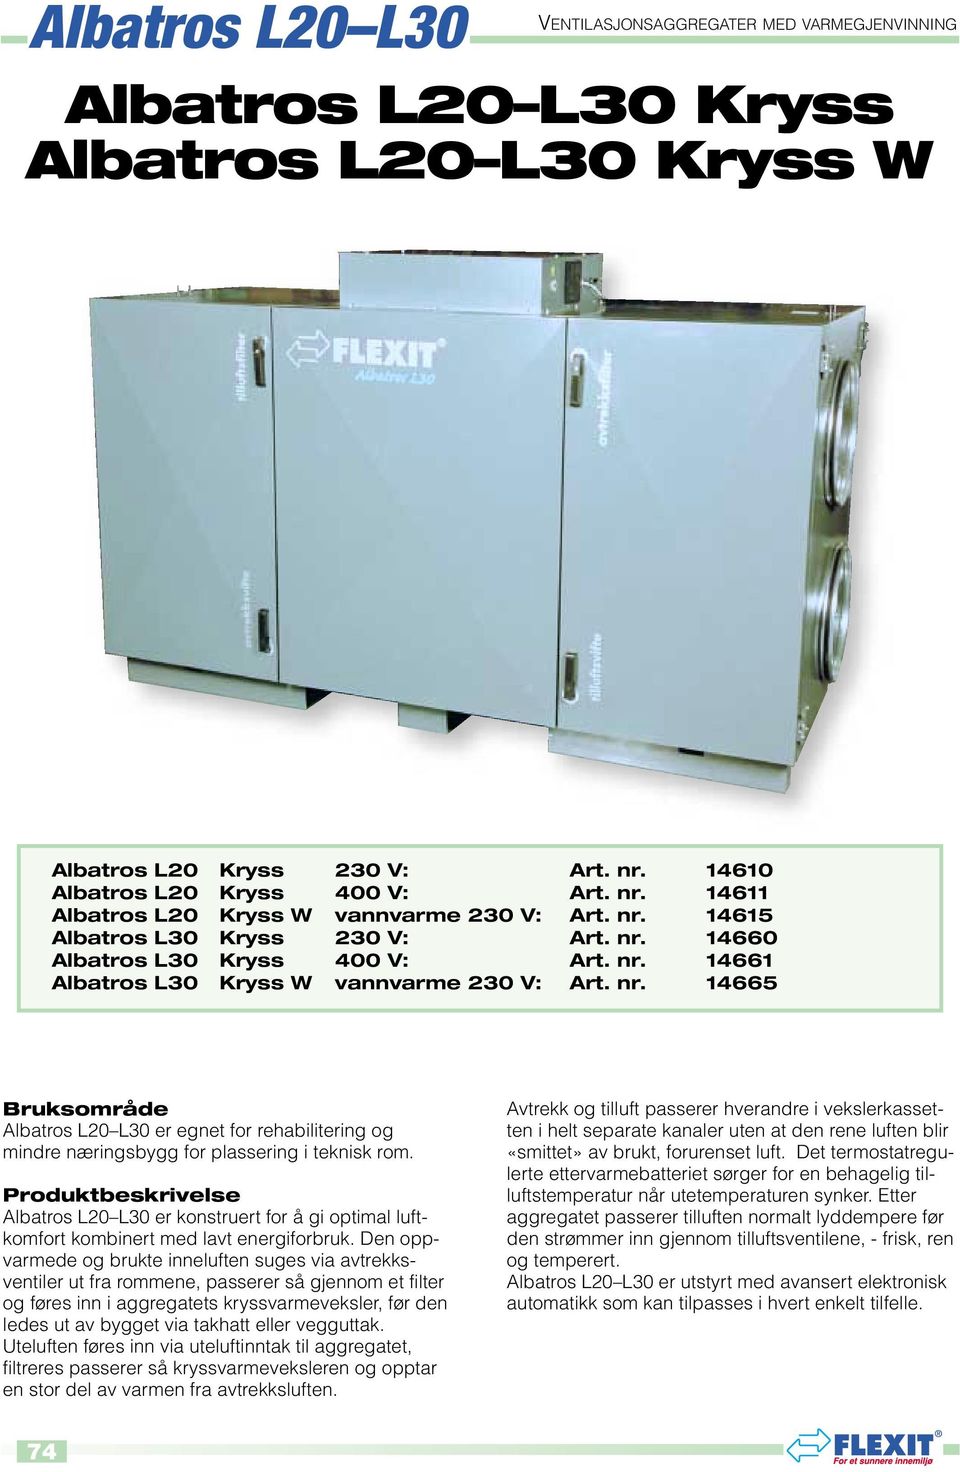 Produktbeskrivelse Albatros L20 L30 er konstruert for å gi optimal luftkomfort kombinert med lavt energiforbruk.